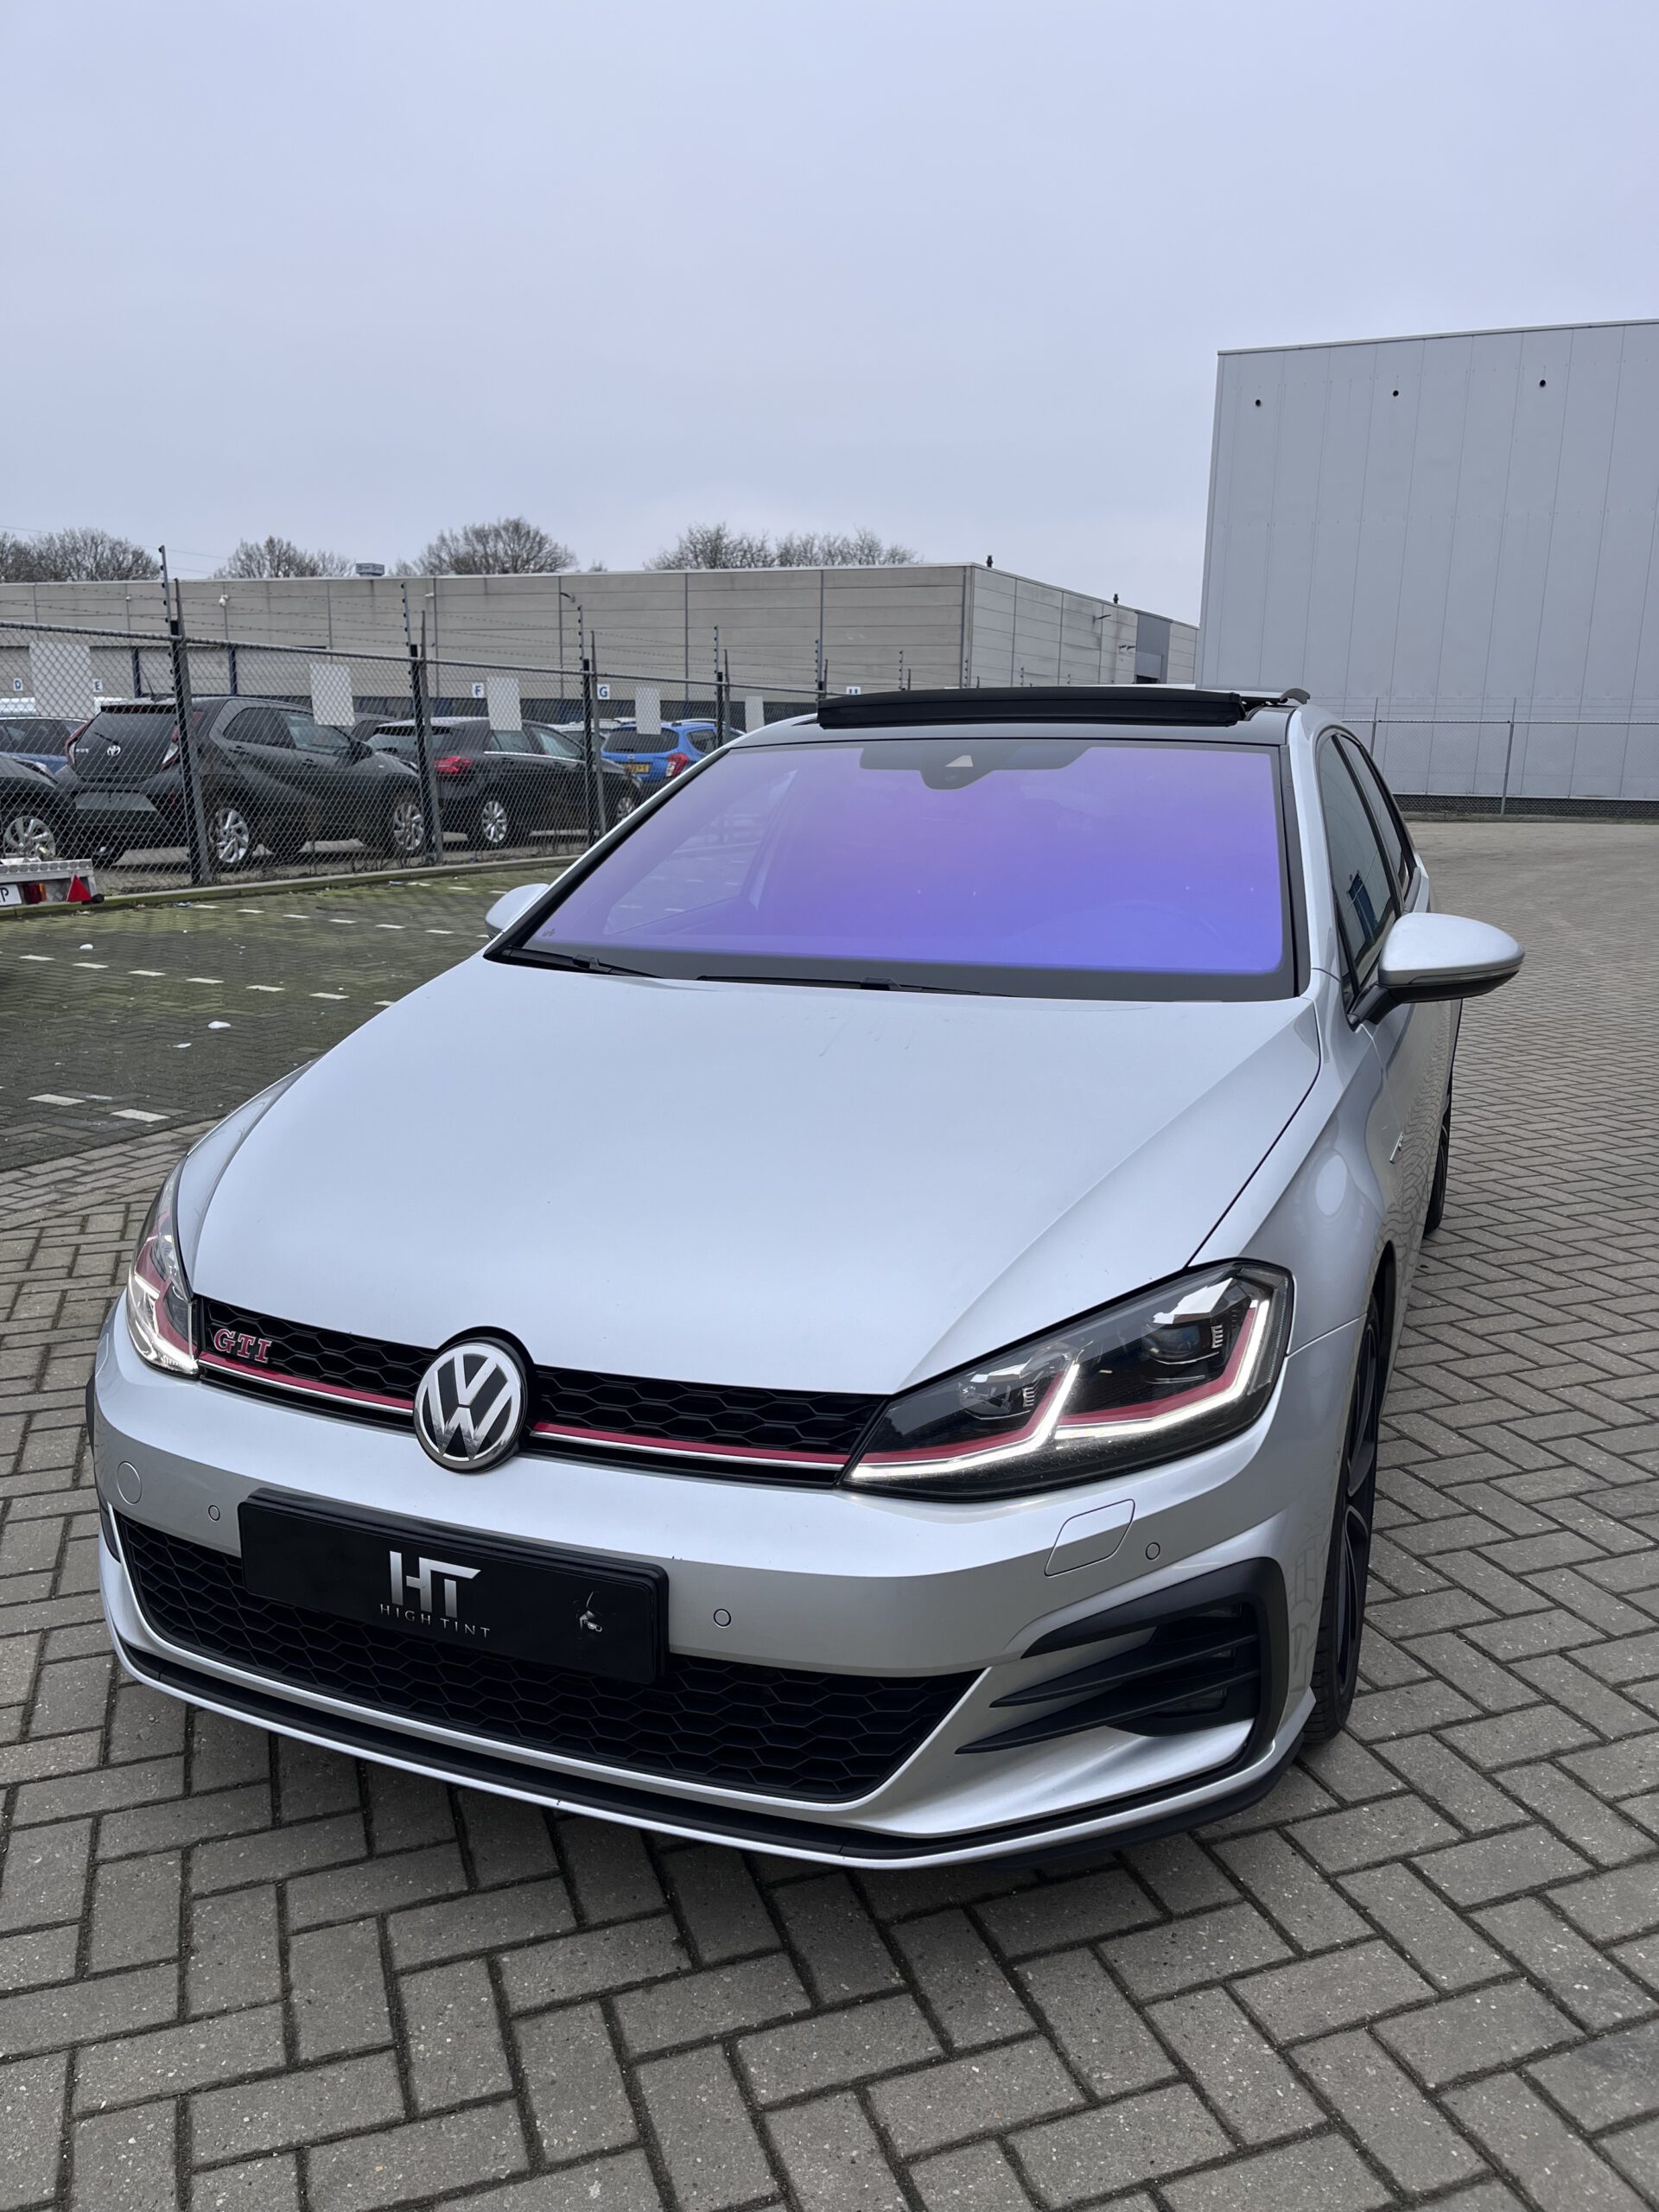 Volkswagen Golf 7 geparkeerd in Tilburg met Chameleon Tint